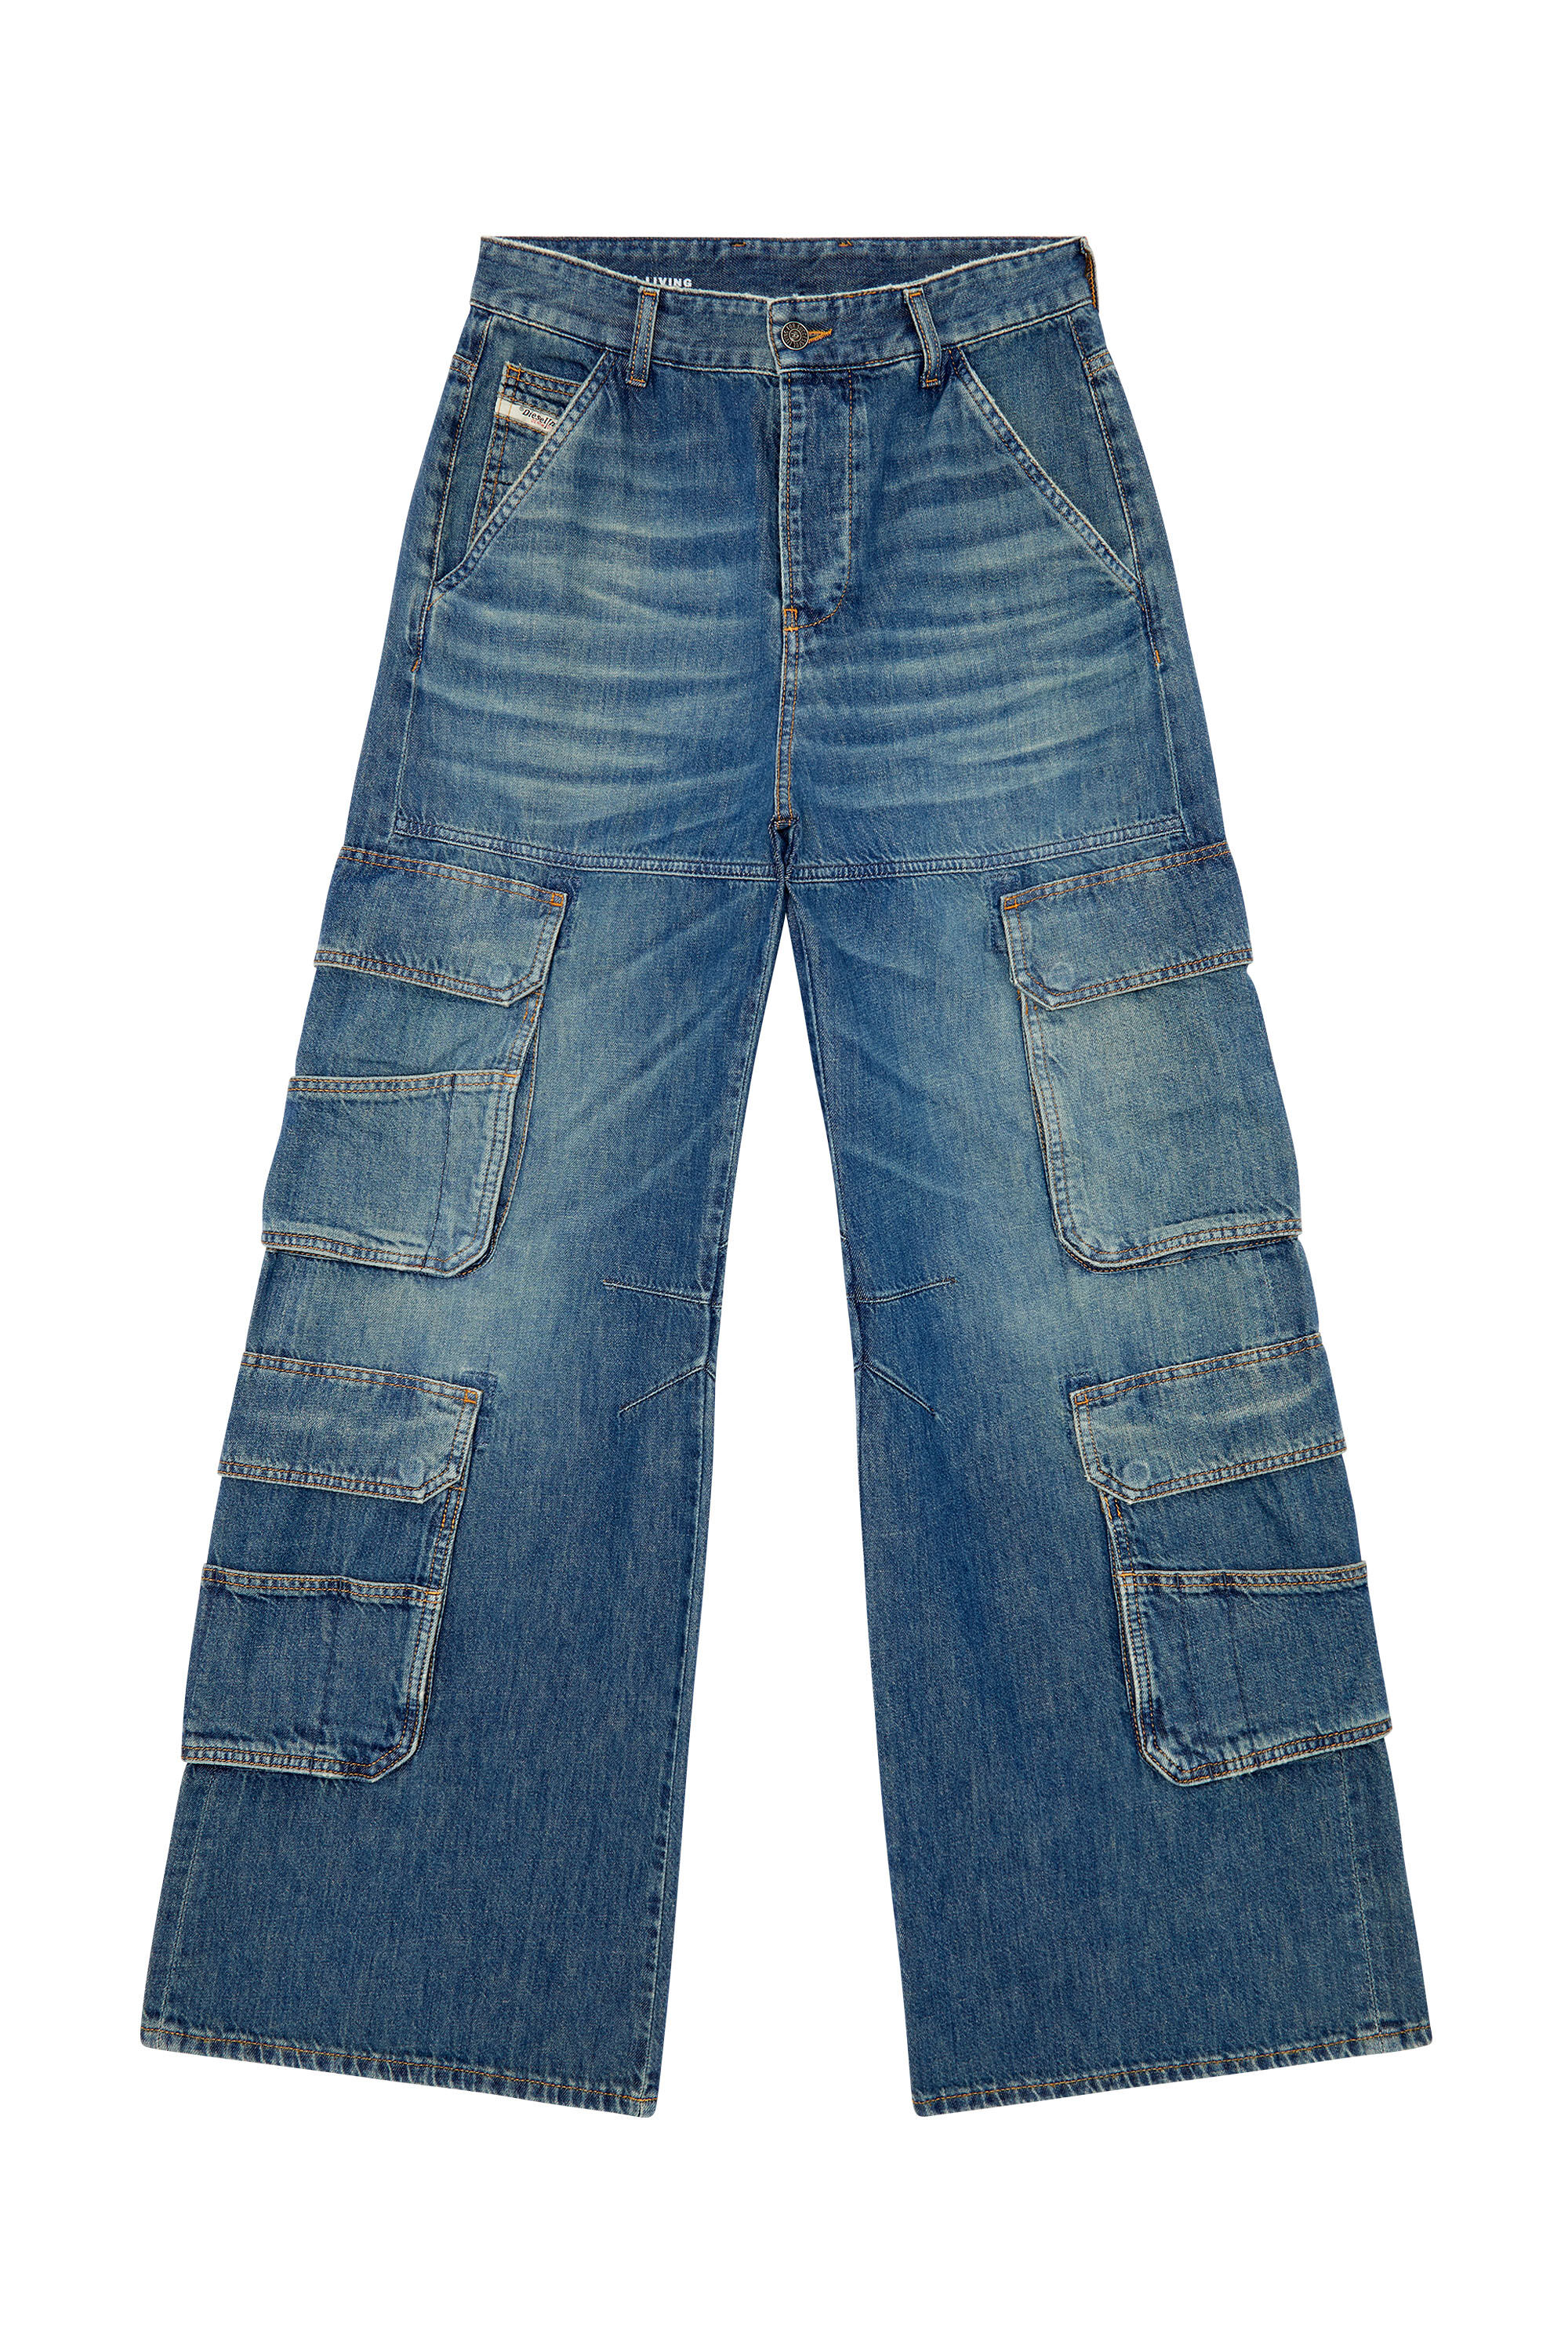 Women's Wide Straight Jeans | Light blue | Diesel 1996 D-Sire